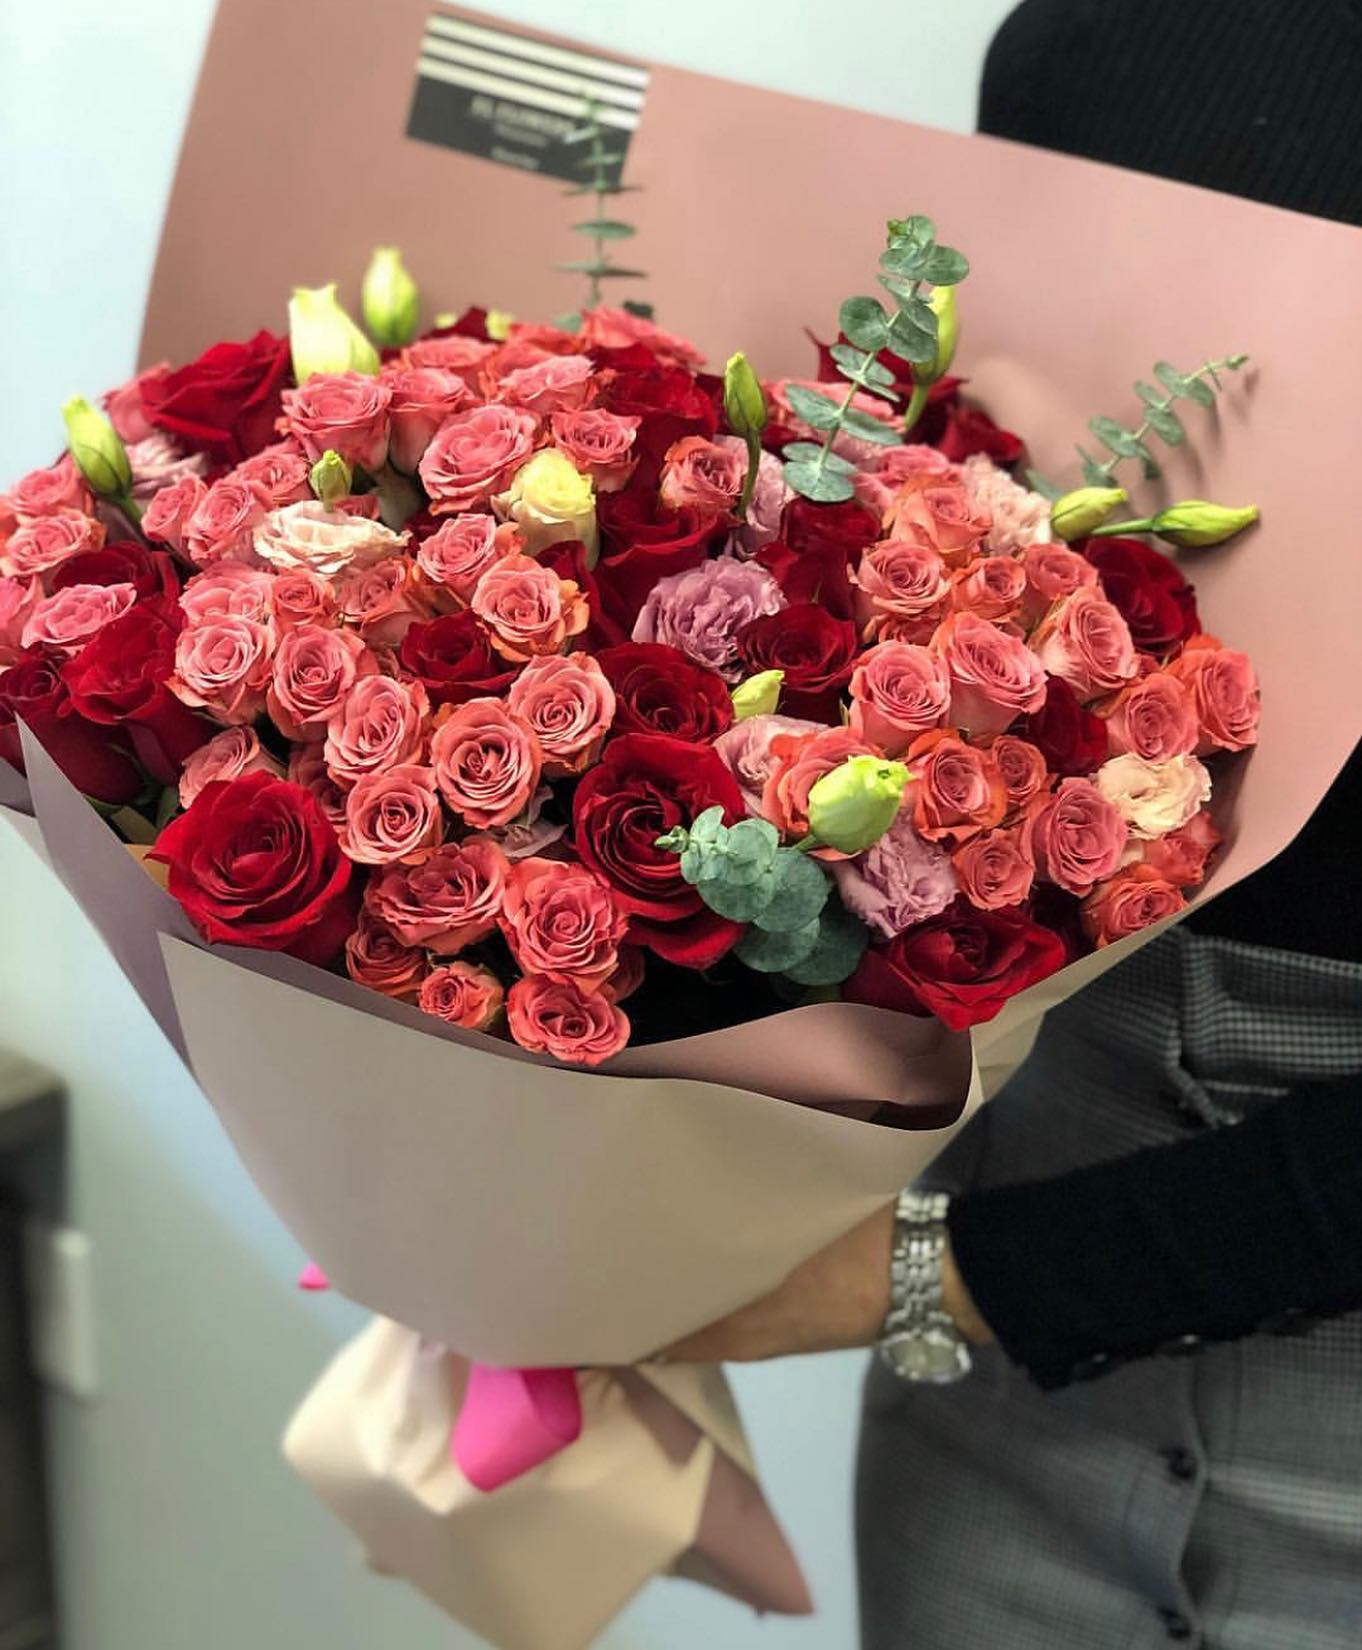 Blushing roses – DOZARI STUDIO – Same Day Flower Delivery in Philadelphia